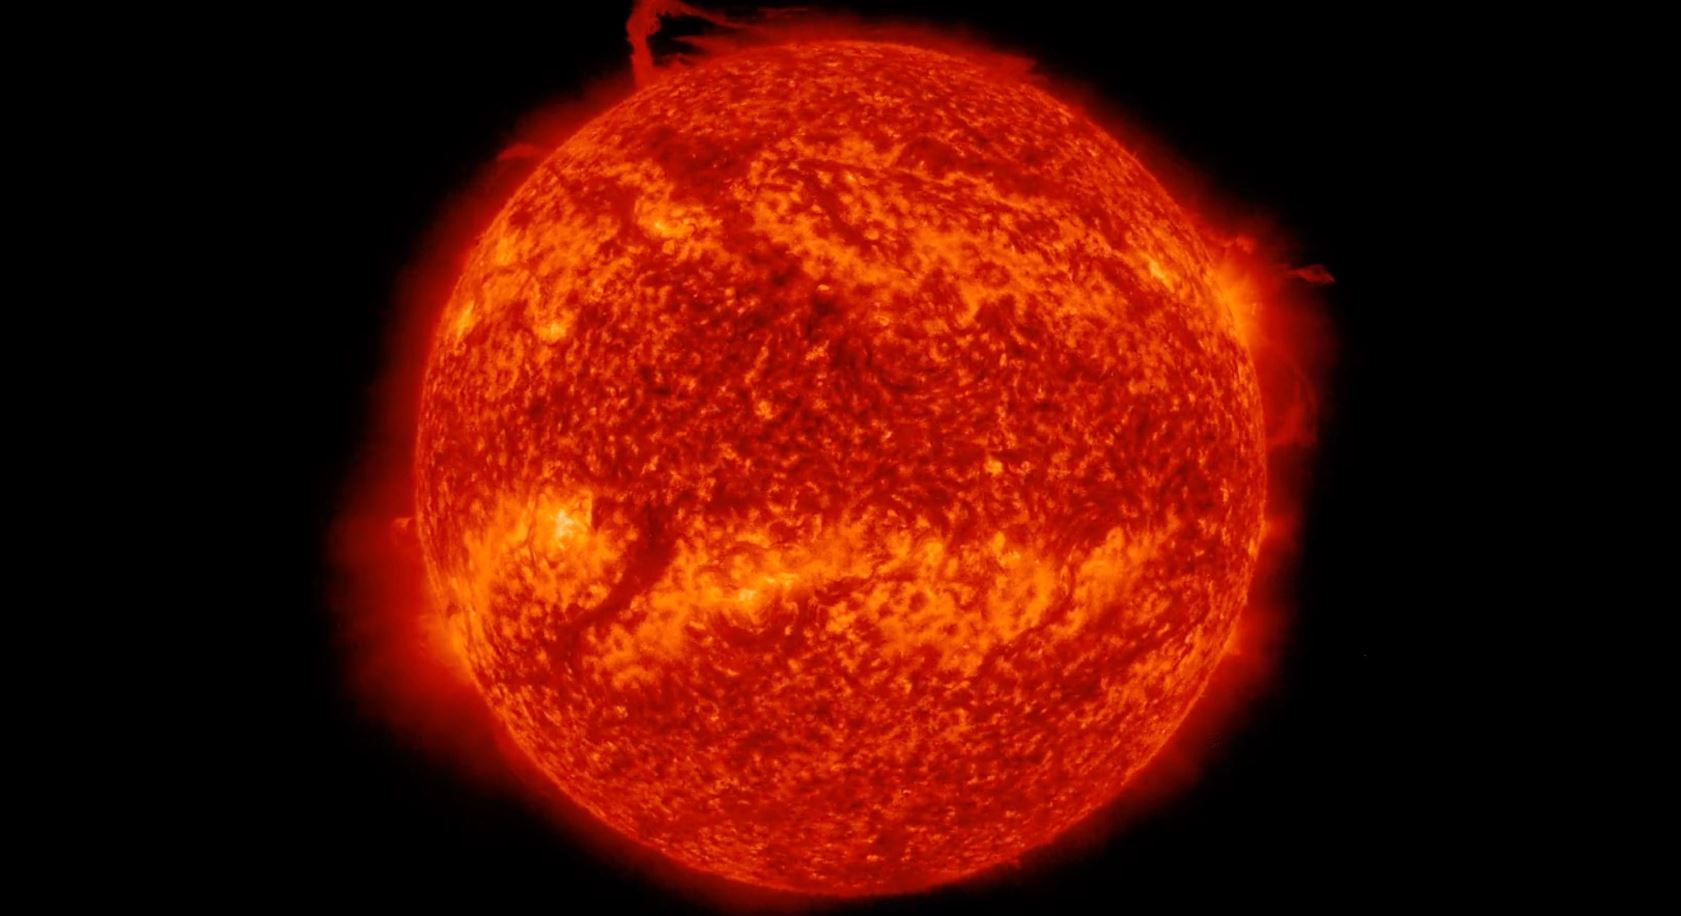 Κομμάτι του ήλιου προκάλεσε ανεμοστρόβιλο – Προβληματισμός στους επιστήμονες